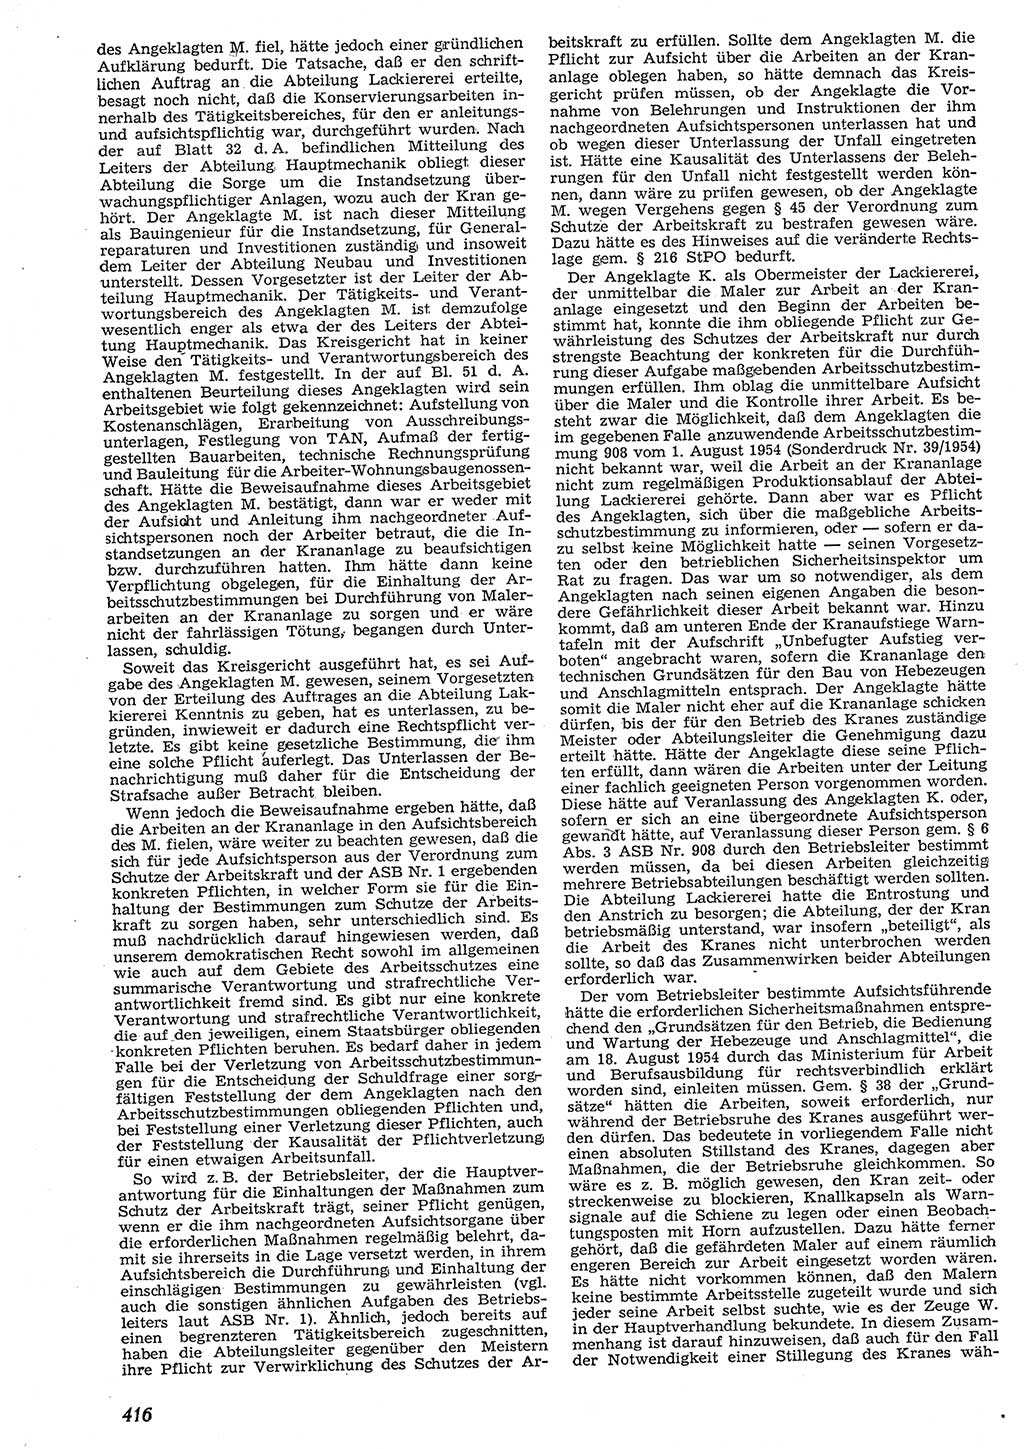 Neue Justiz (NJ), Zeitschrift für Recht und Rechtswissenschaft [Deutsche Demokratische Republik (DDR)], 10. Jahrgang 1956, Seite 416 (NJ DDR 1956, S. 416)